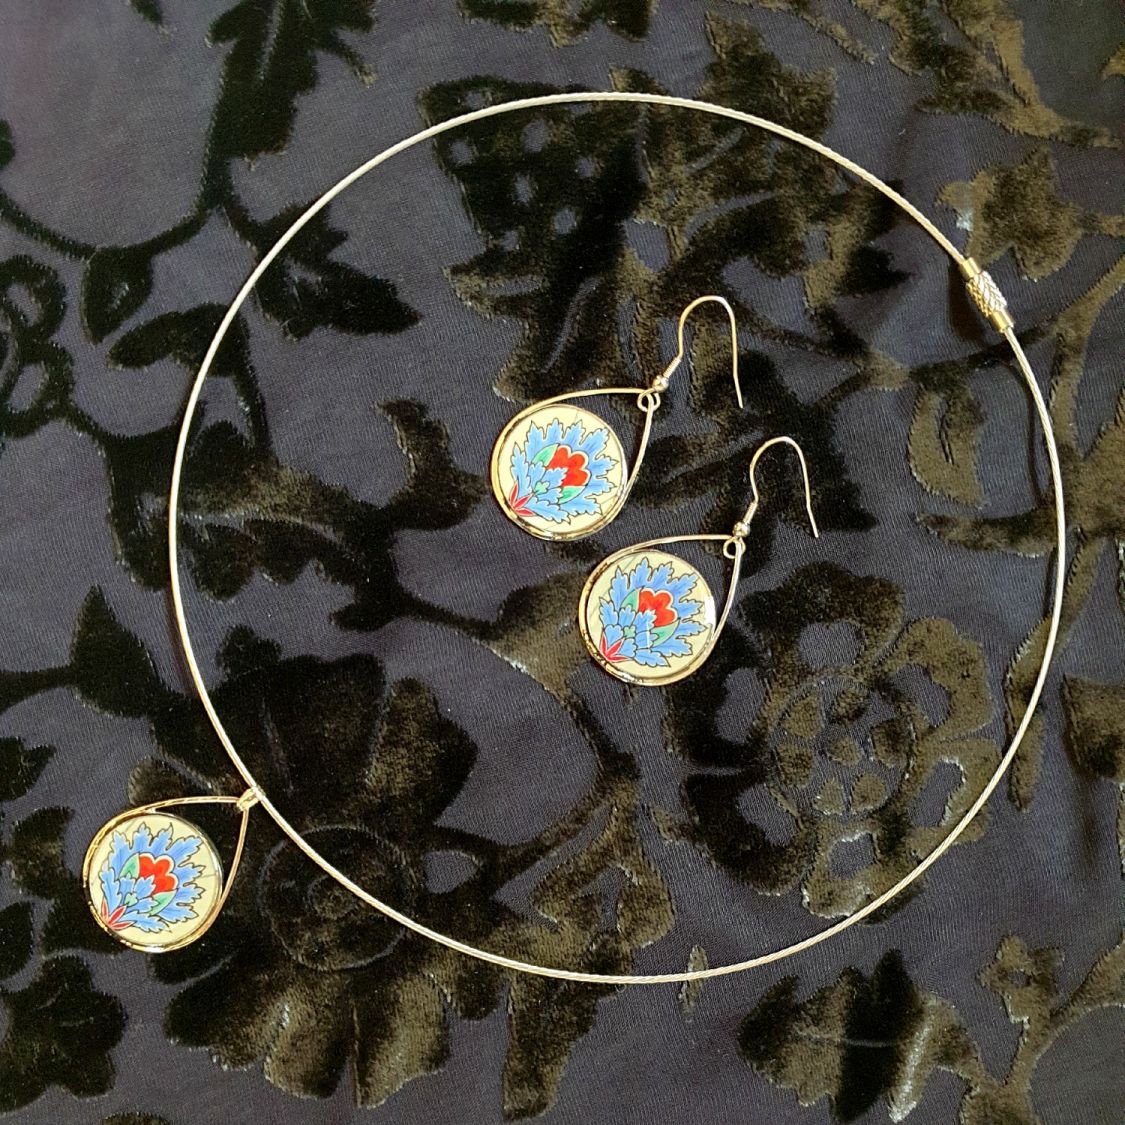 Blue oriental flower pendant earrings